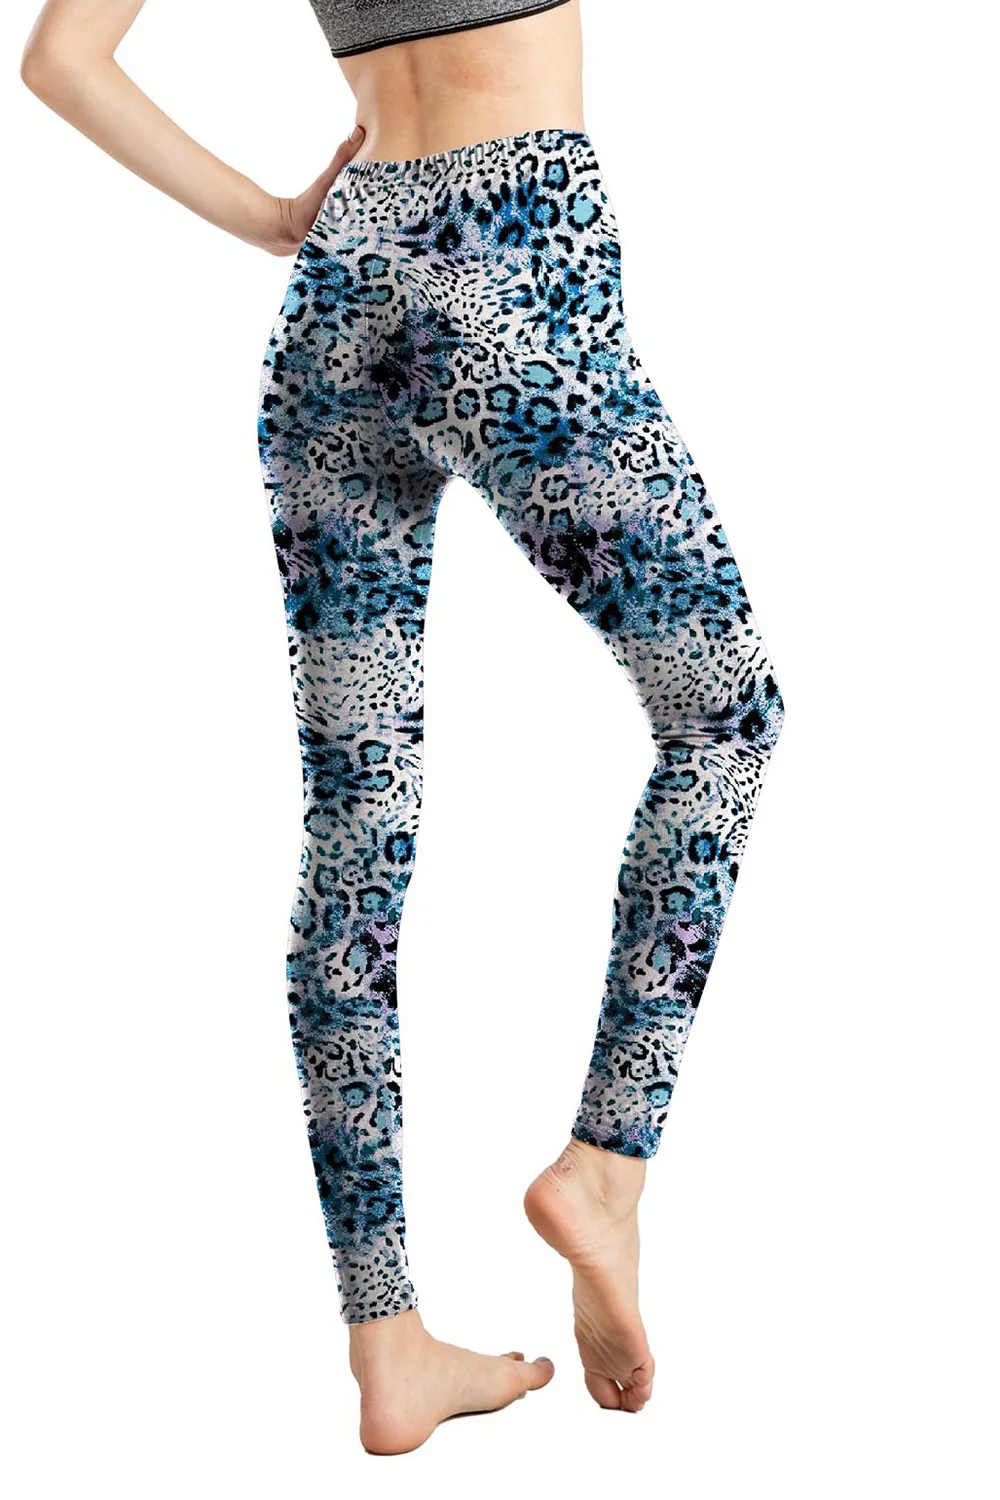 legging imprimé léopard et zèbre pour pantalon taille salle salle